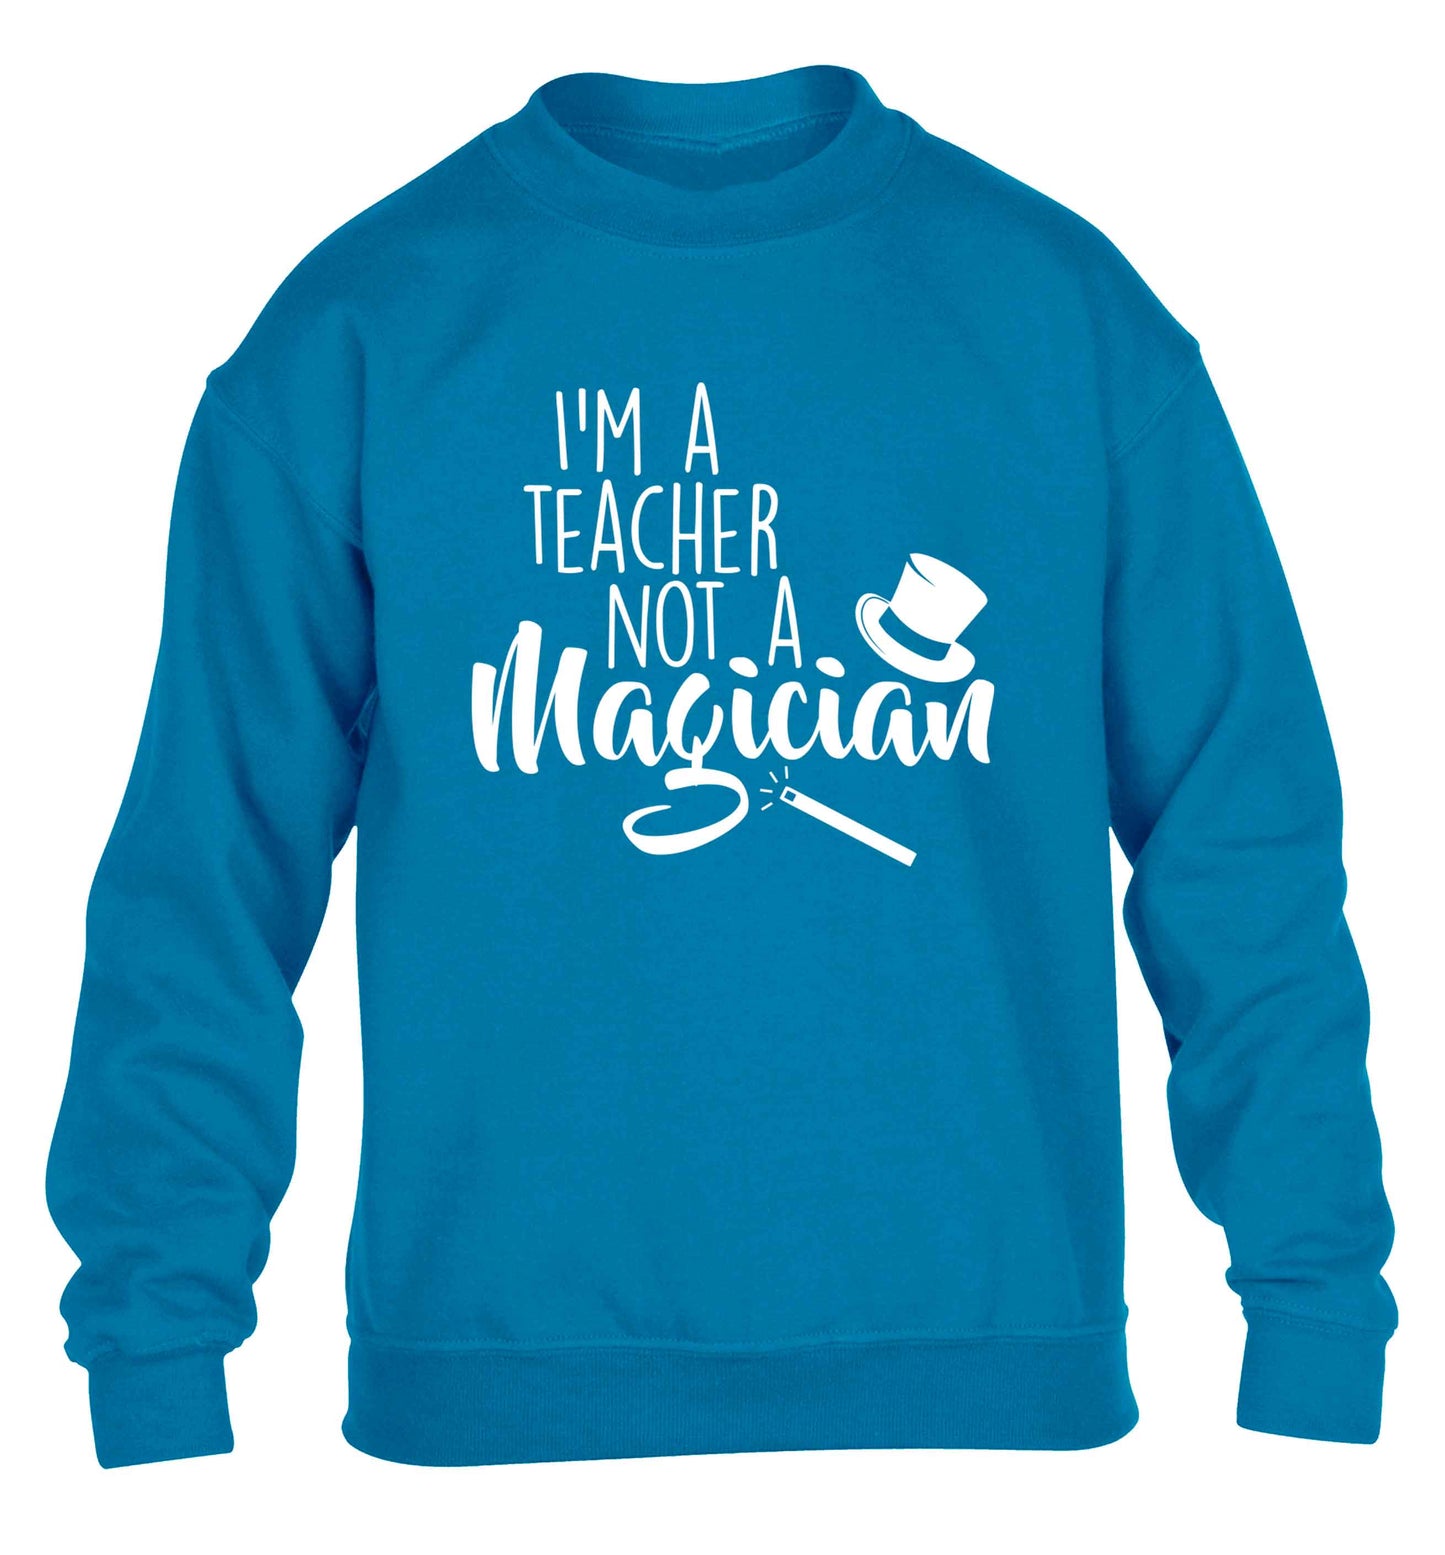 I'm a teacher not a magician children's blue sweater 12-13 Years